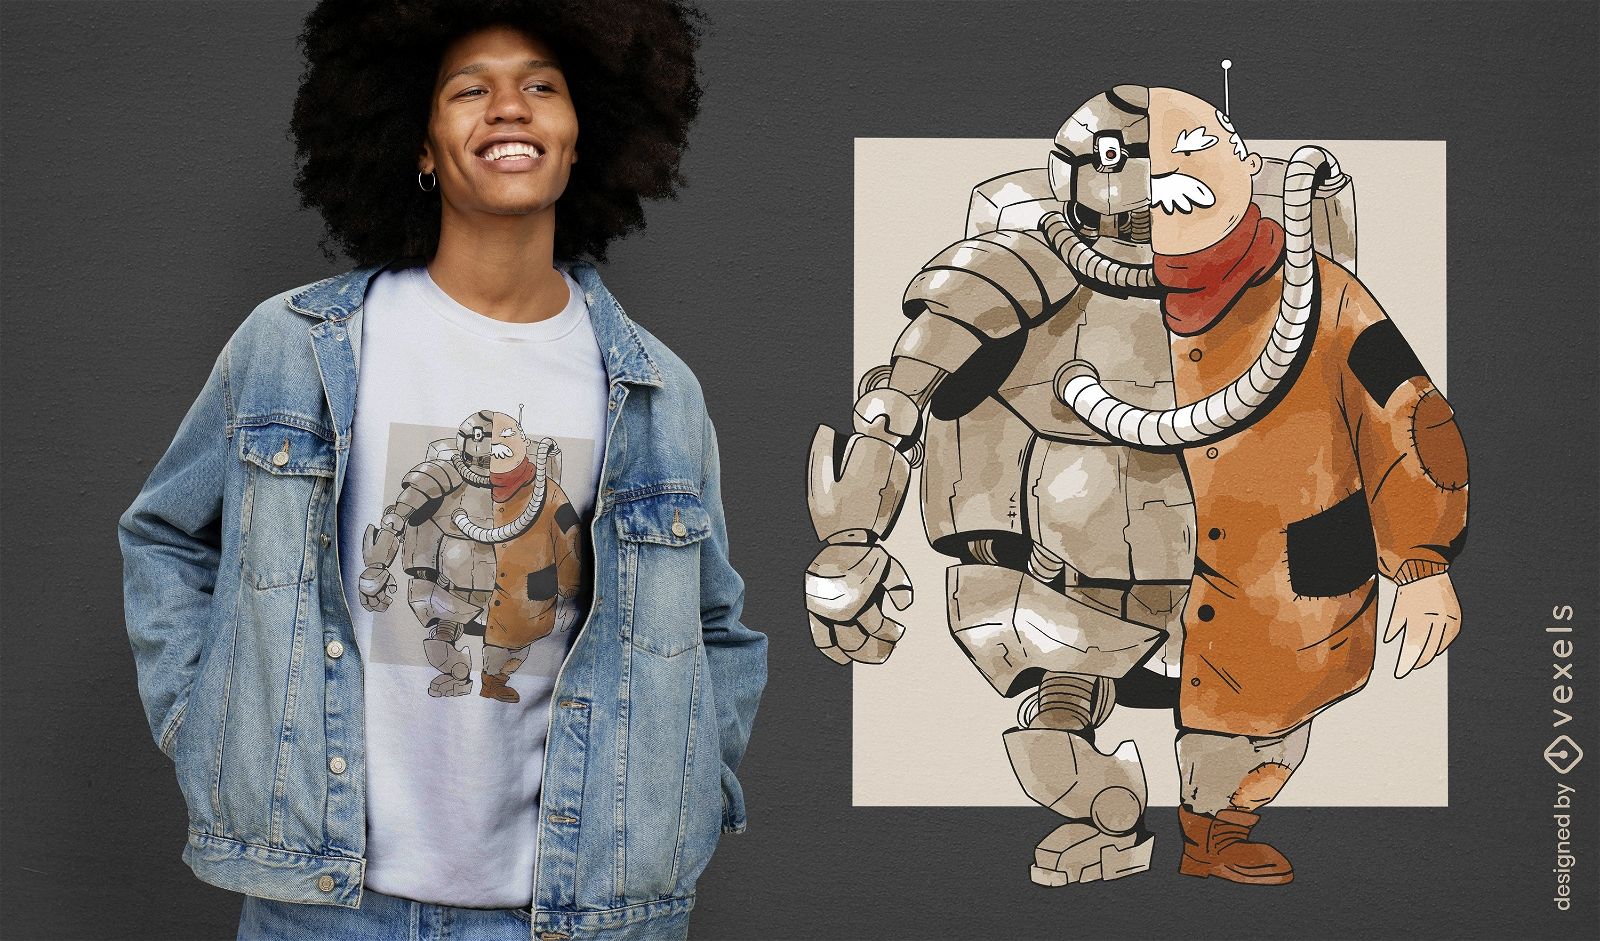 Diseño de camiseta de personaje mitad humano y robot.